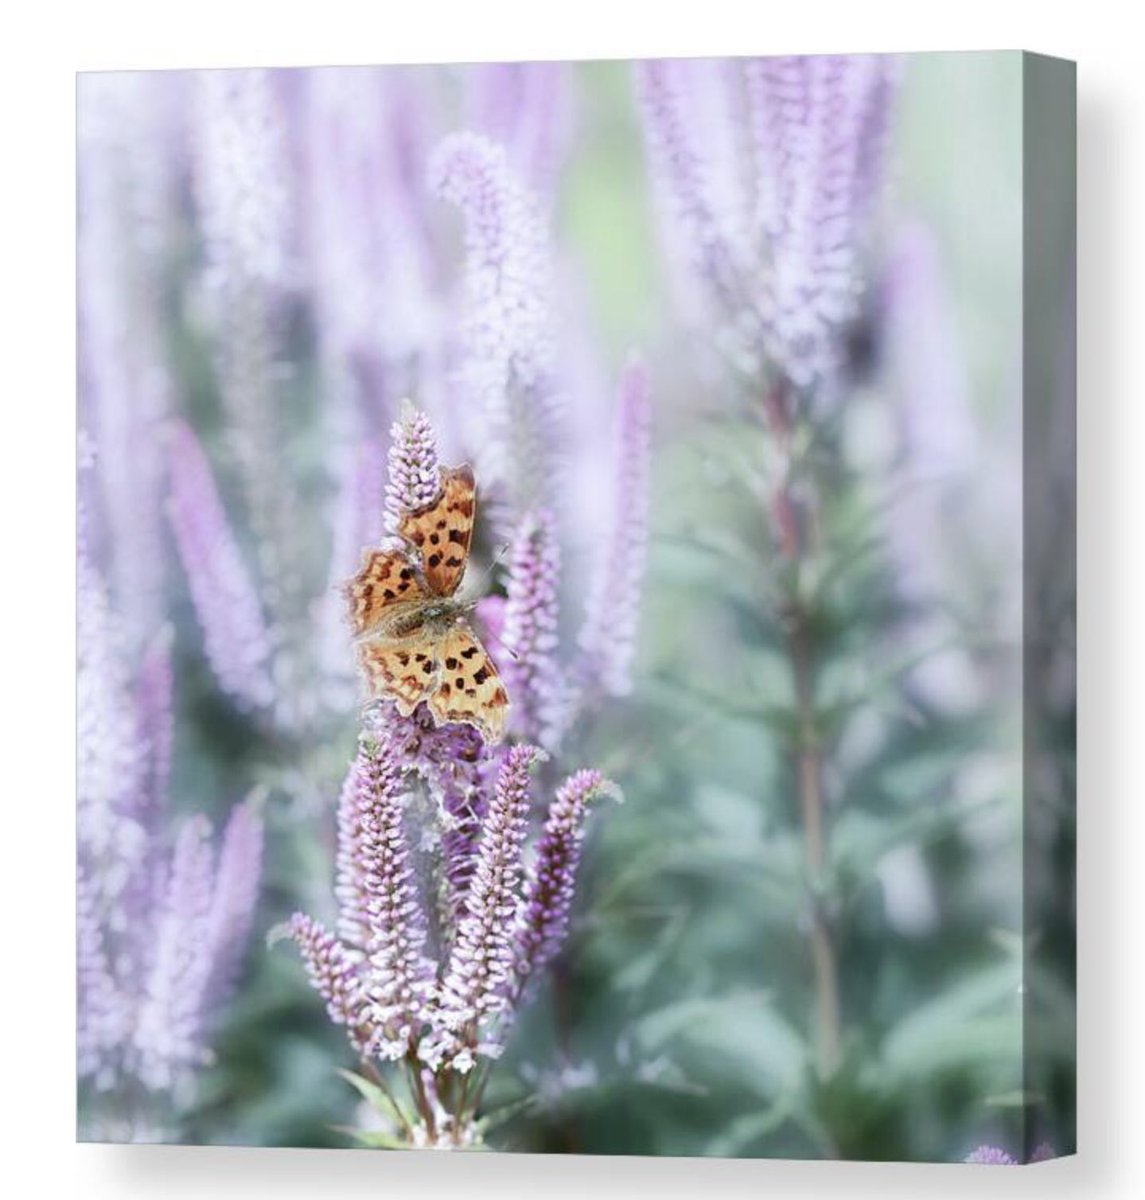 Butterfly Dream HERE: 5-tanya-smith.pixels.com/featured/butte… #WallArtDecor #wallartforsale #prints #homedecor #interiordecor #butterfly #butterflies #nature #FillThatEmptyWall #BuyIntoArt